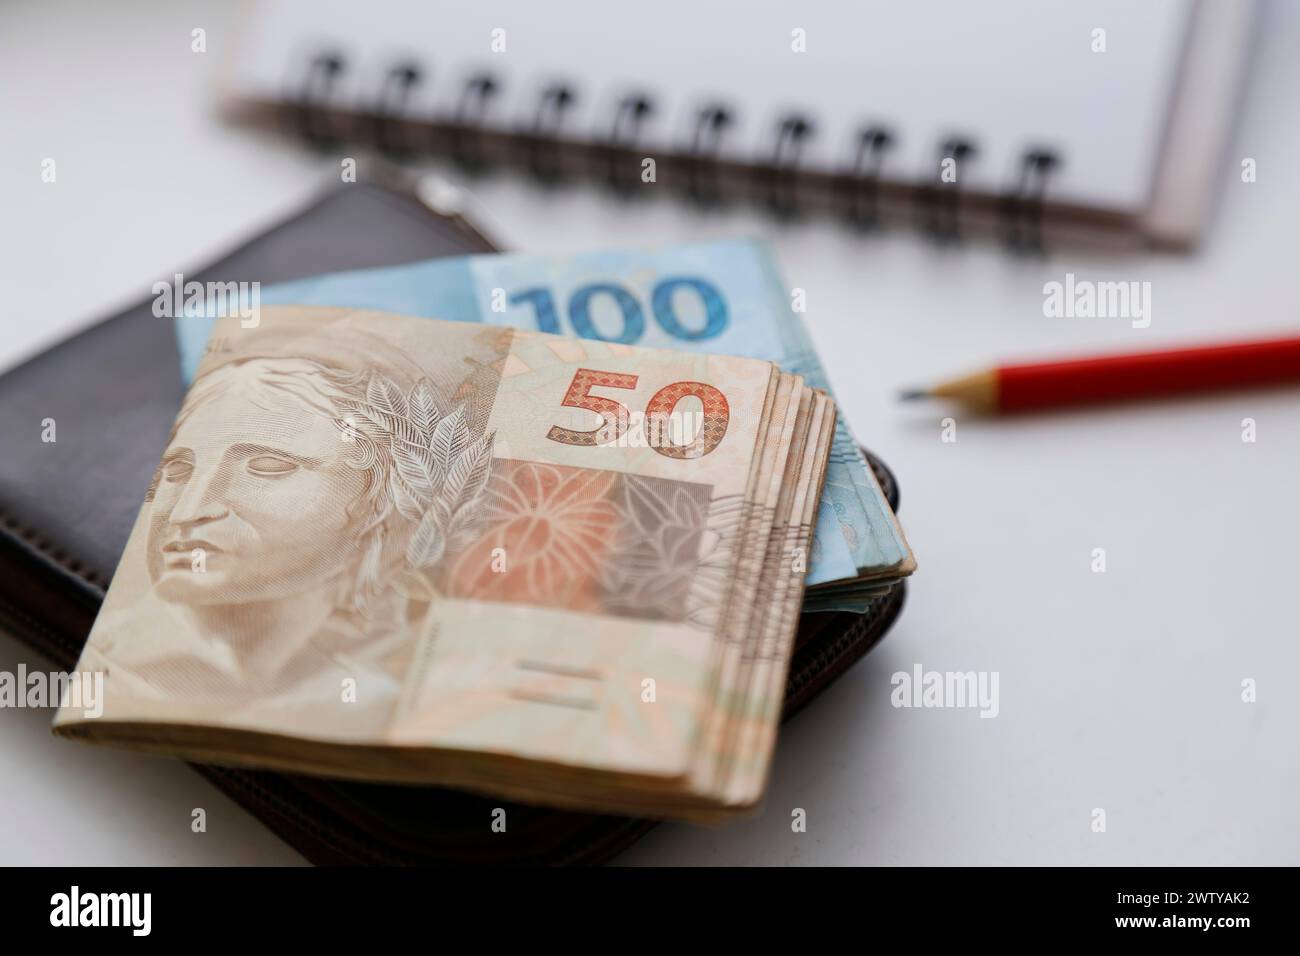 Plusieurs reais notes - argent du Brésil sur la table et portefeuille, crayon et bloc-notes Banque D'Images